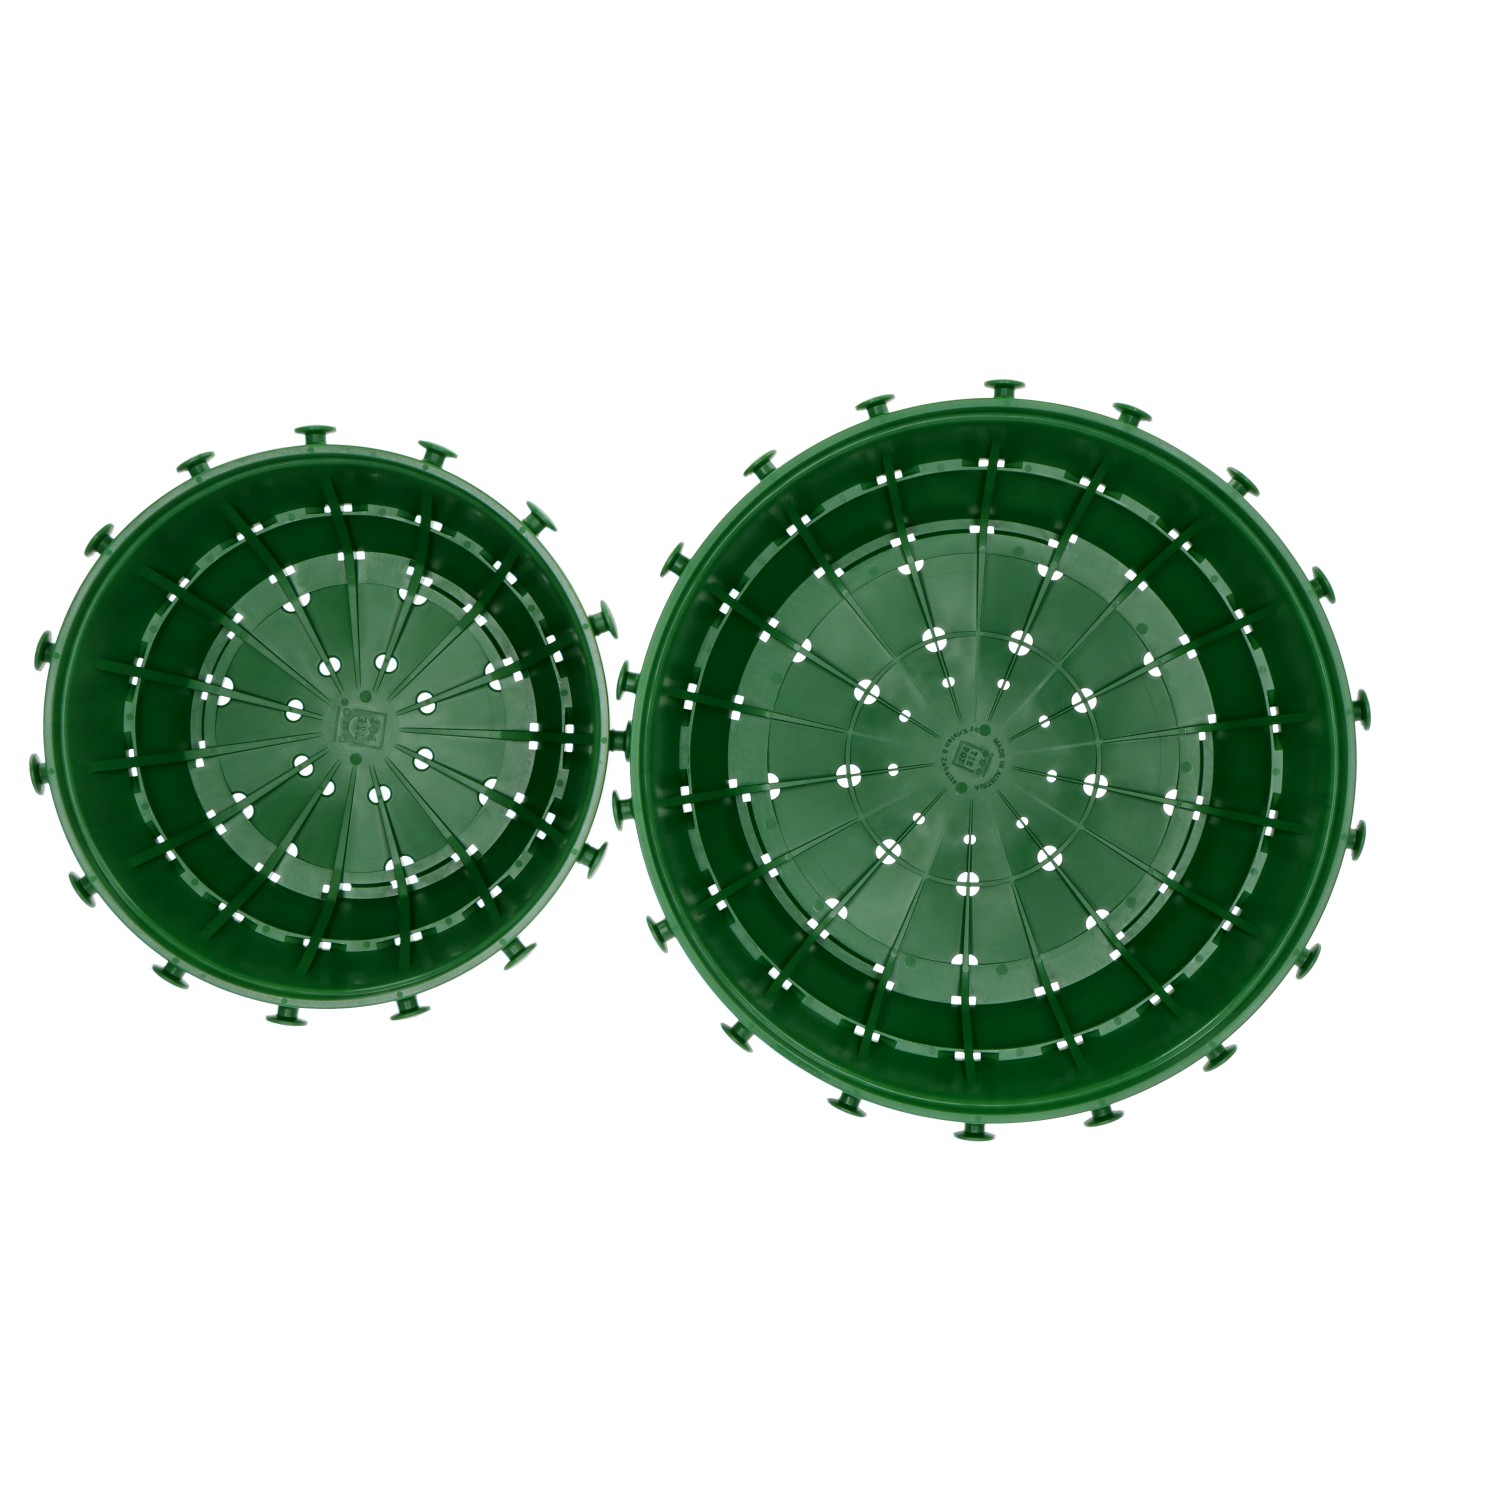 Tie Pot Anzuchtschale grün mit Knäufen, Kunststoff - ca. 28 x 28 x 11 cm